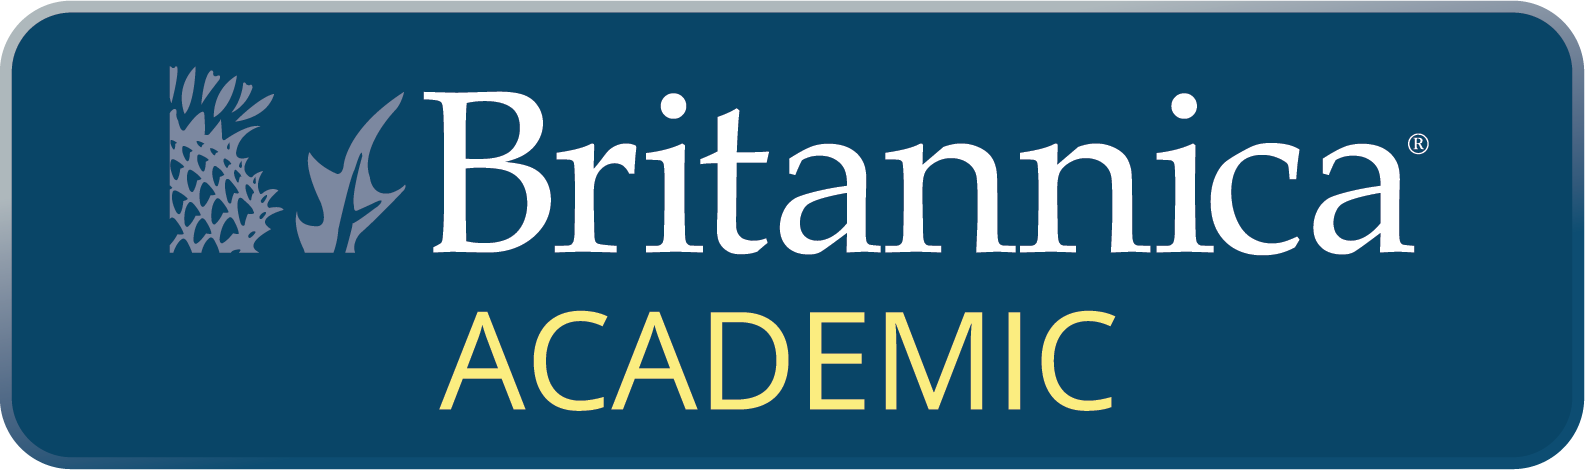 Britannica Academic logo